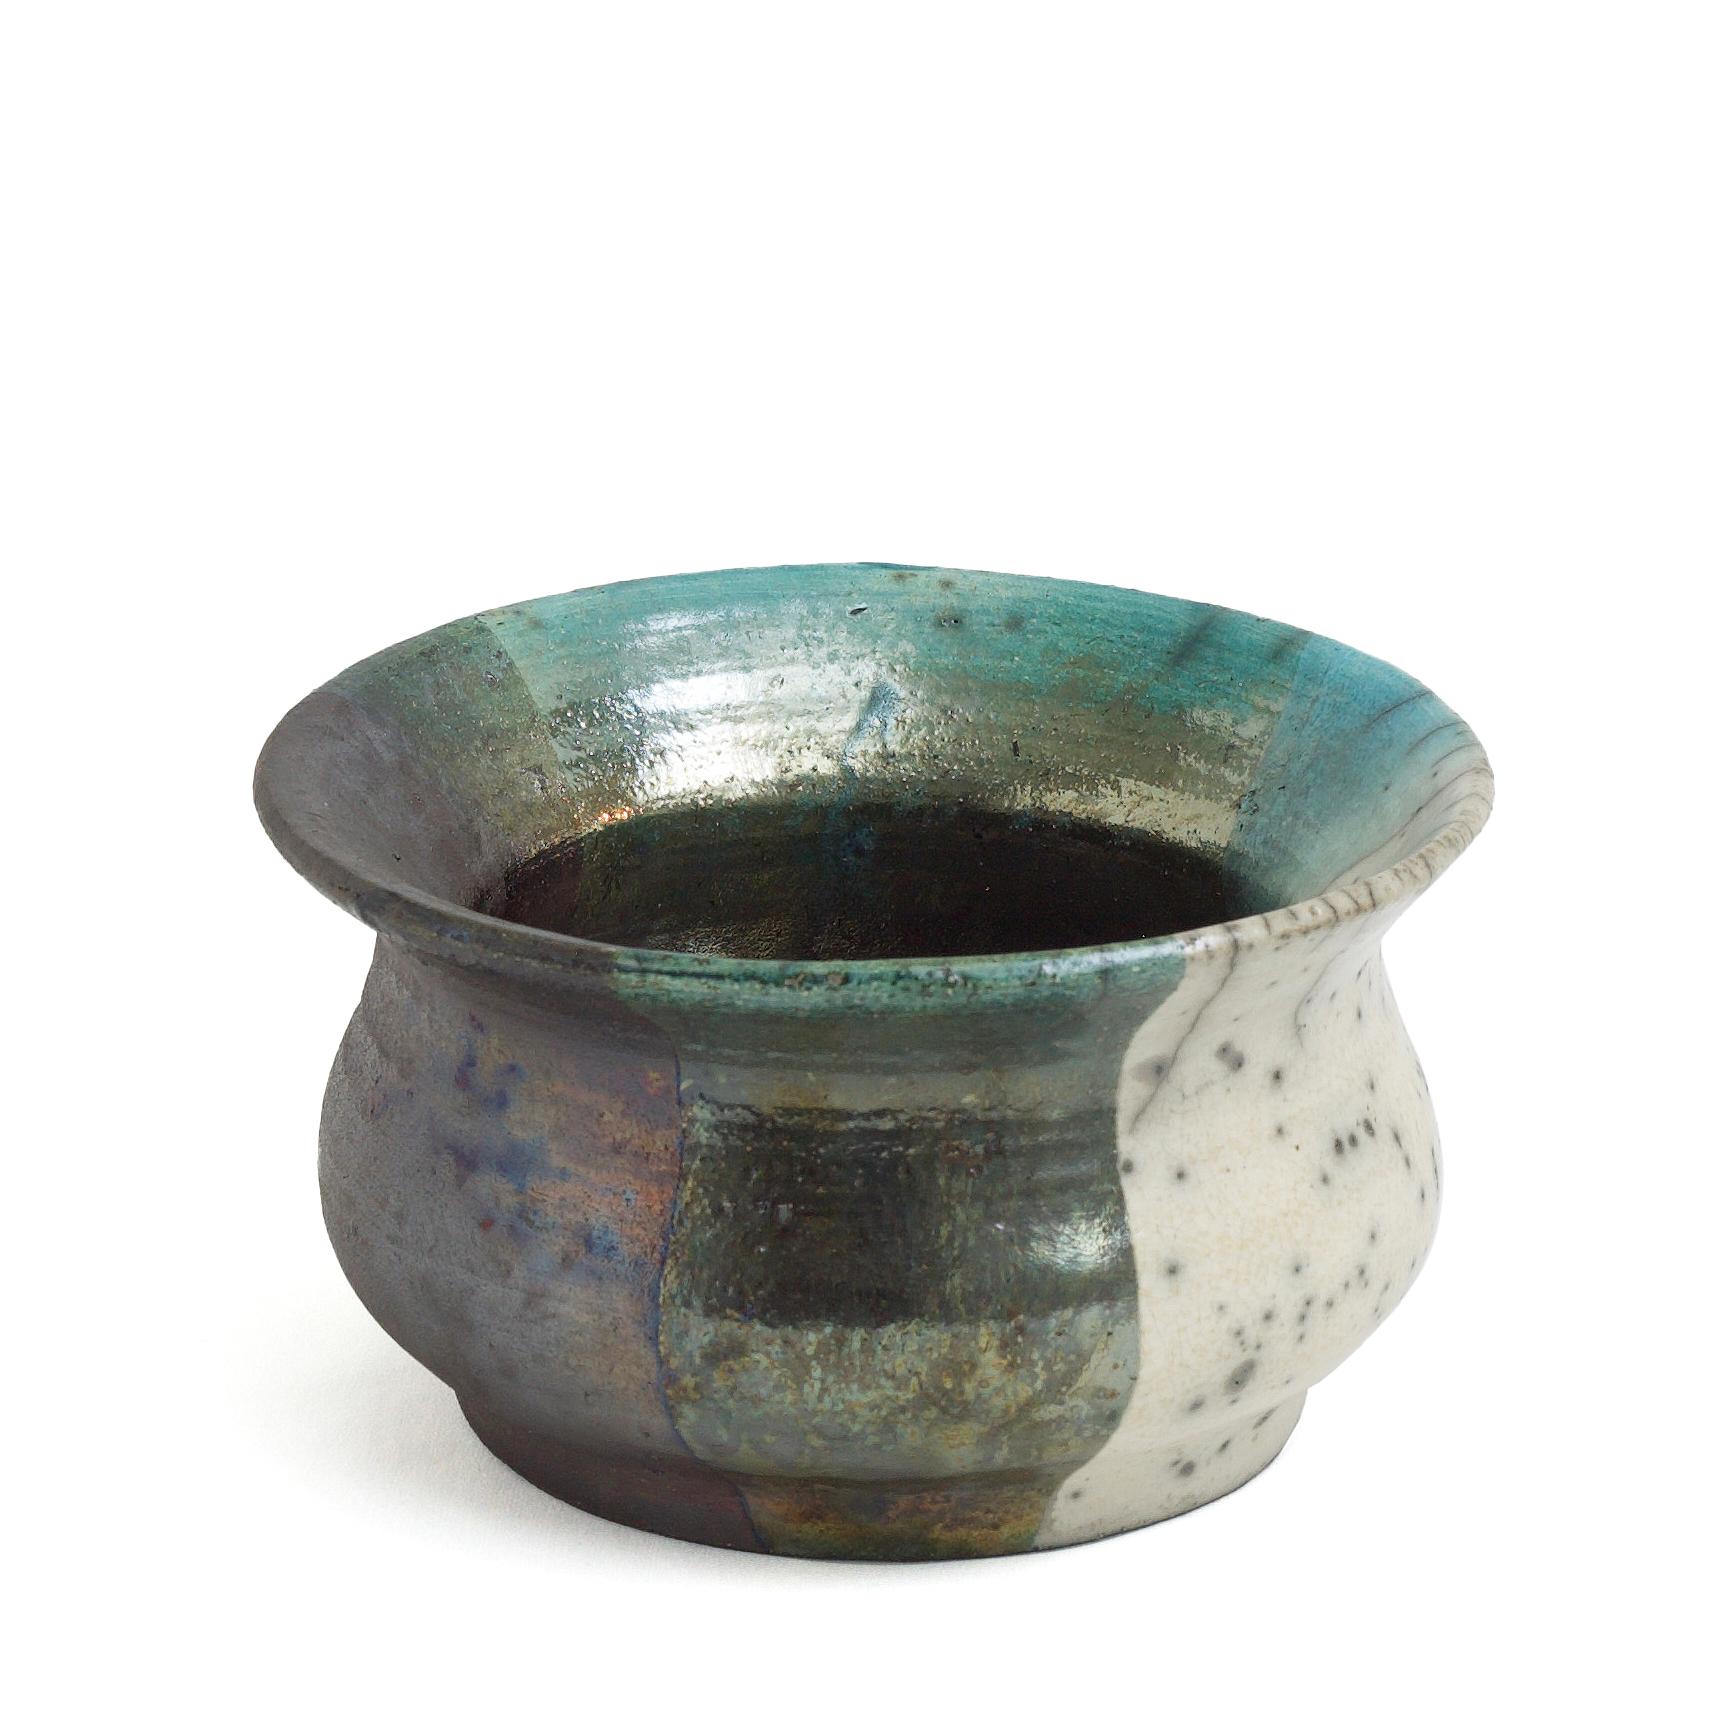 Vase Decisione

Le métal et la céramique sont combinés dans cet étonnant résultat d'un bol raku moderne où les différents matériaux brillent par eux-mêmes et où les effets métalliques et craquelés coexistent dans un éventail époustouflant de